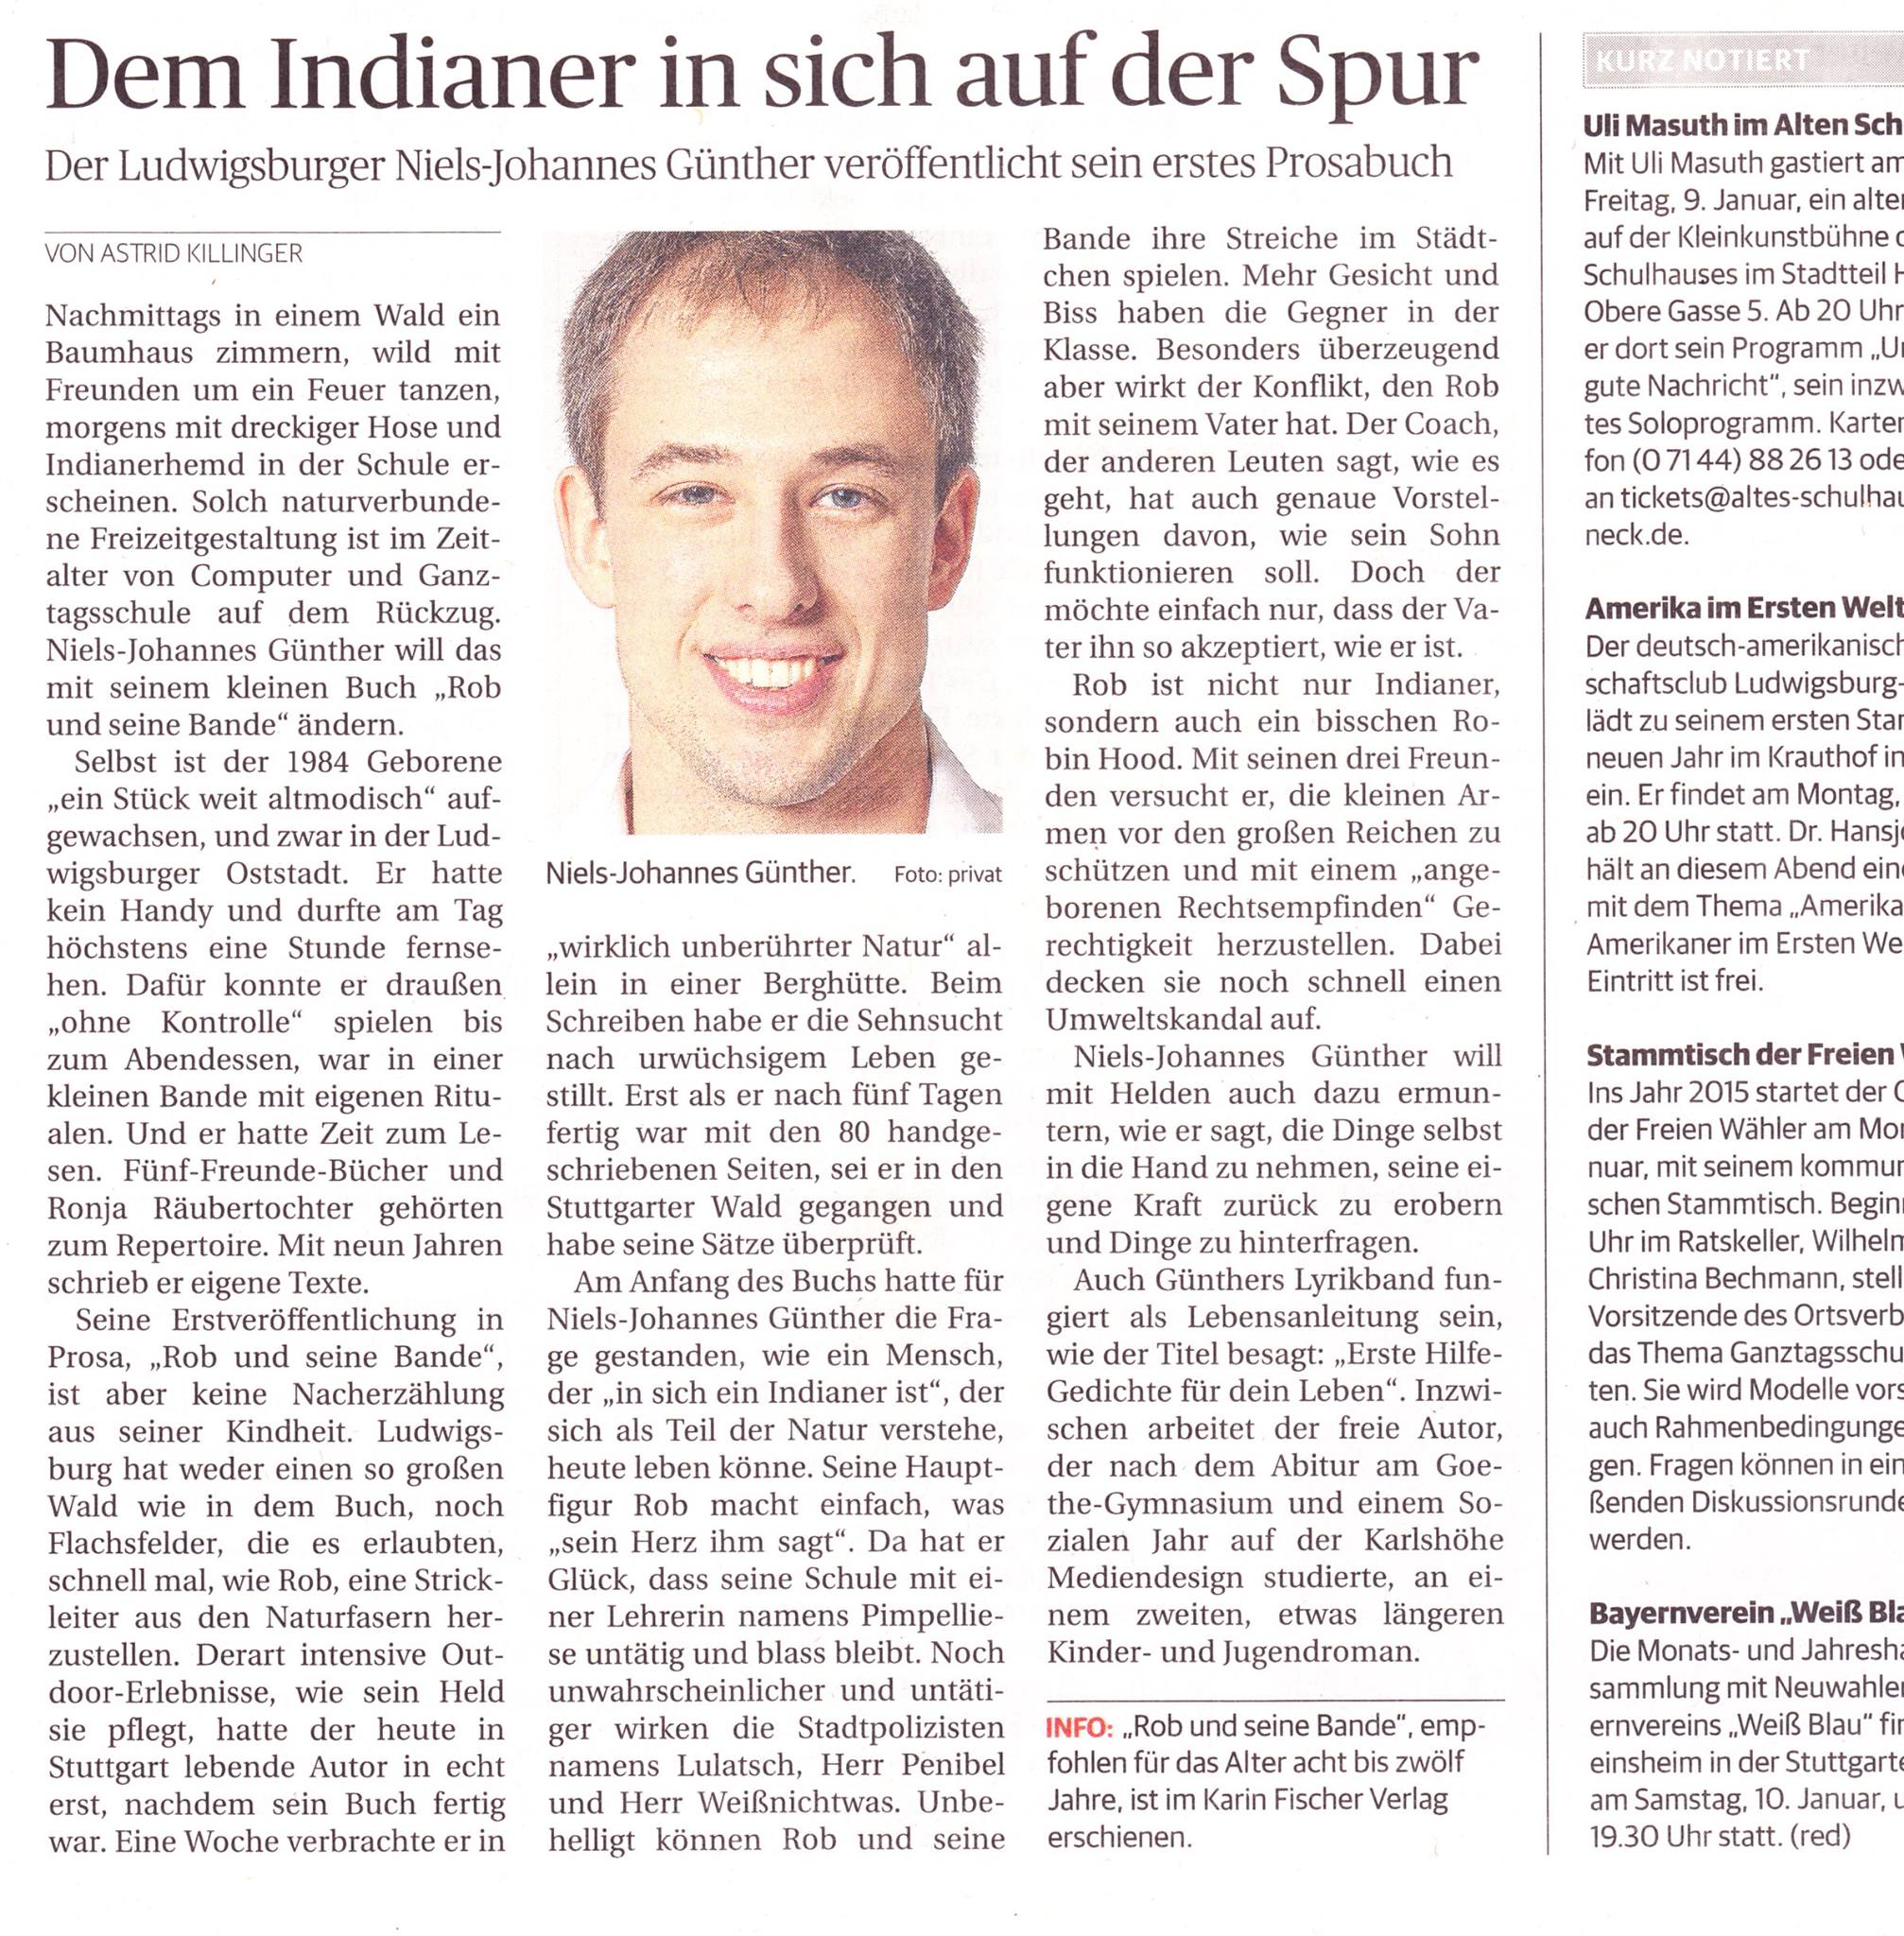 Artikel in der Ludwigsburger Kreiszeitung, LKZ vom 09.01.2015